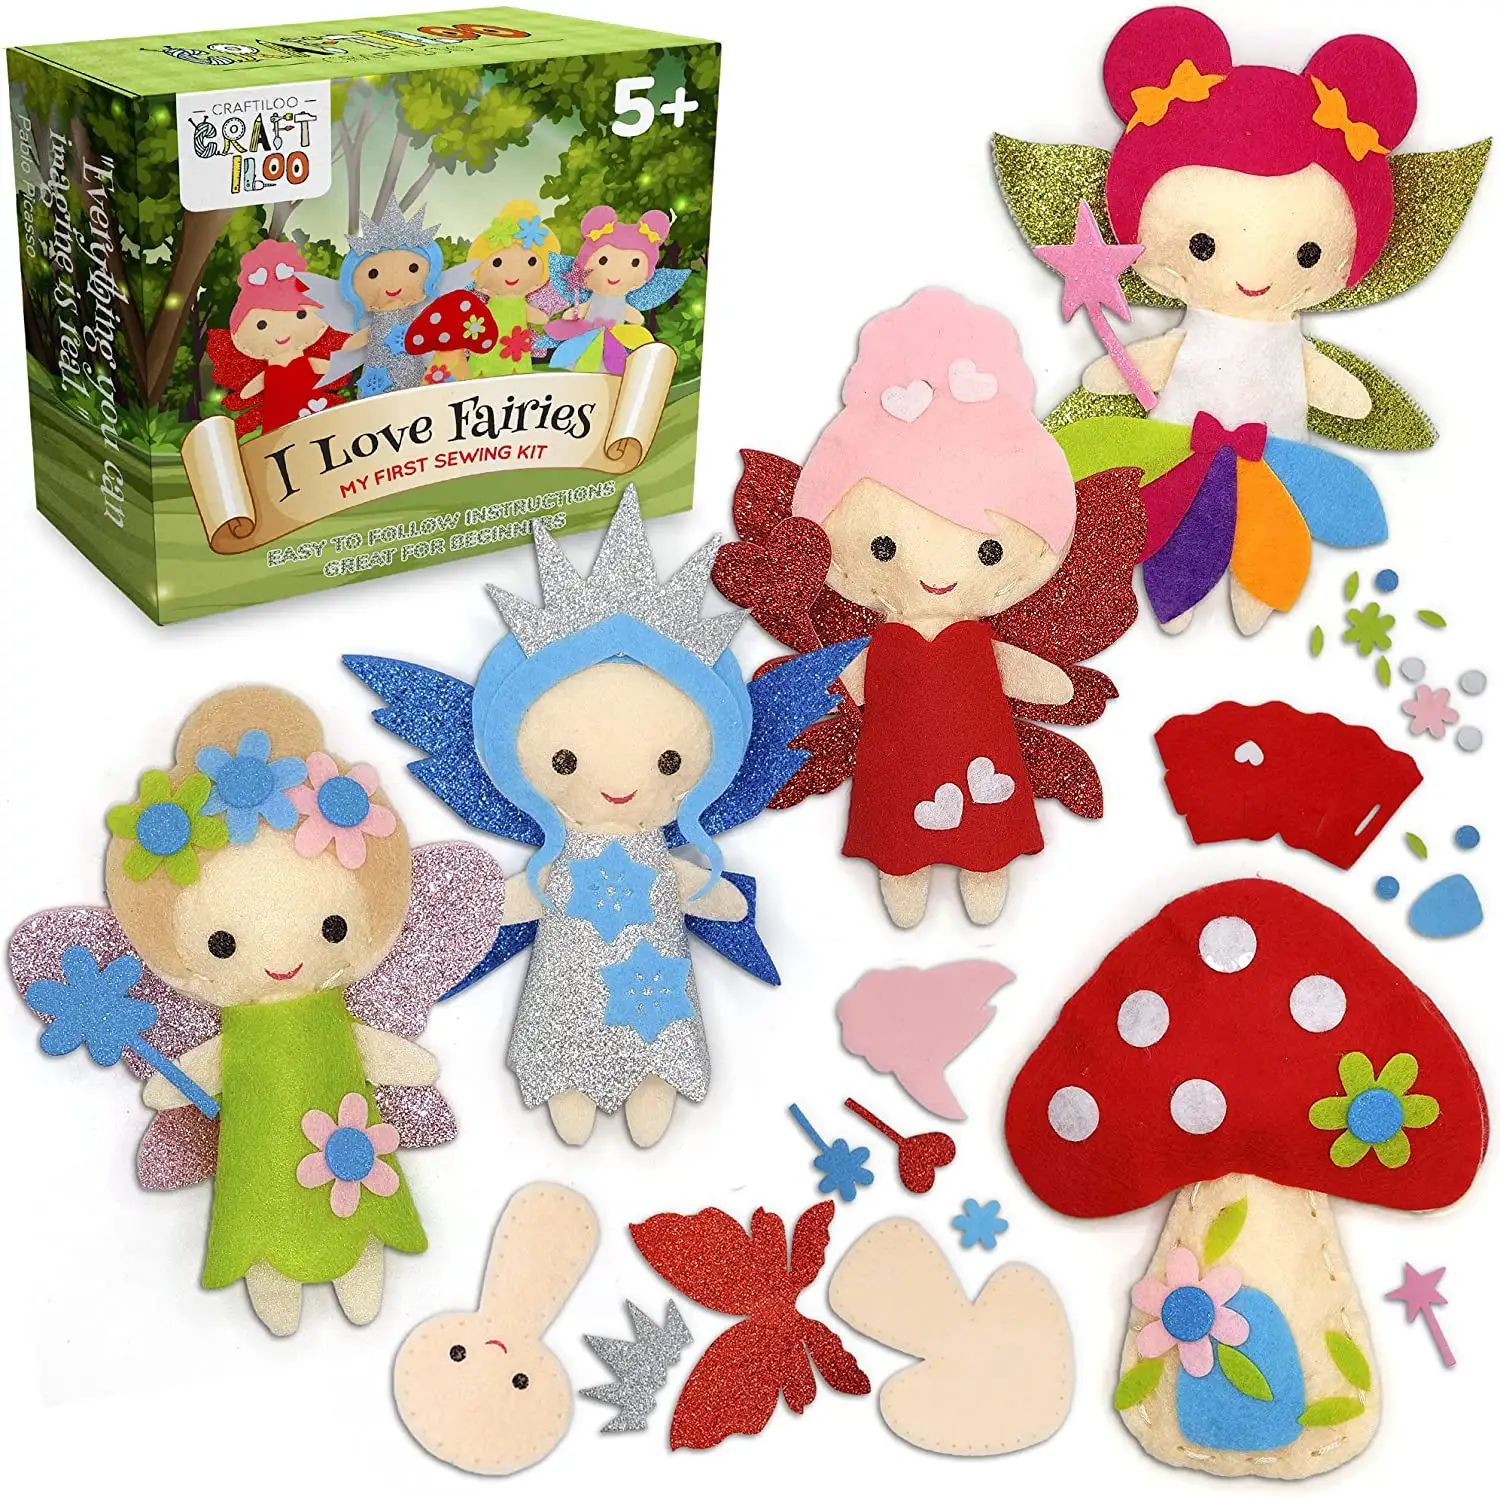 Mini brinquedos de viagem para meninas, kit de brinquedos educativos para crianças, para artes e artesanato, personalizado com feltro